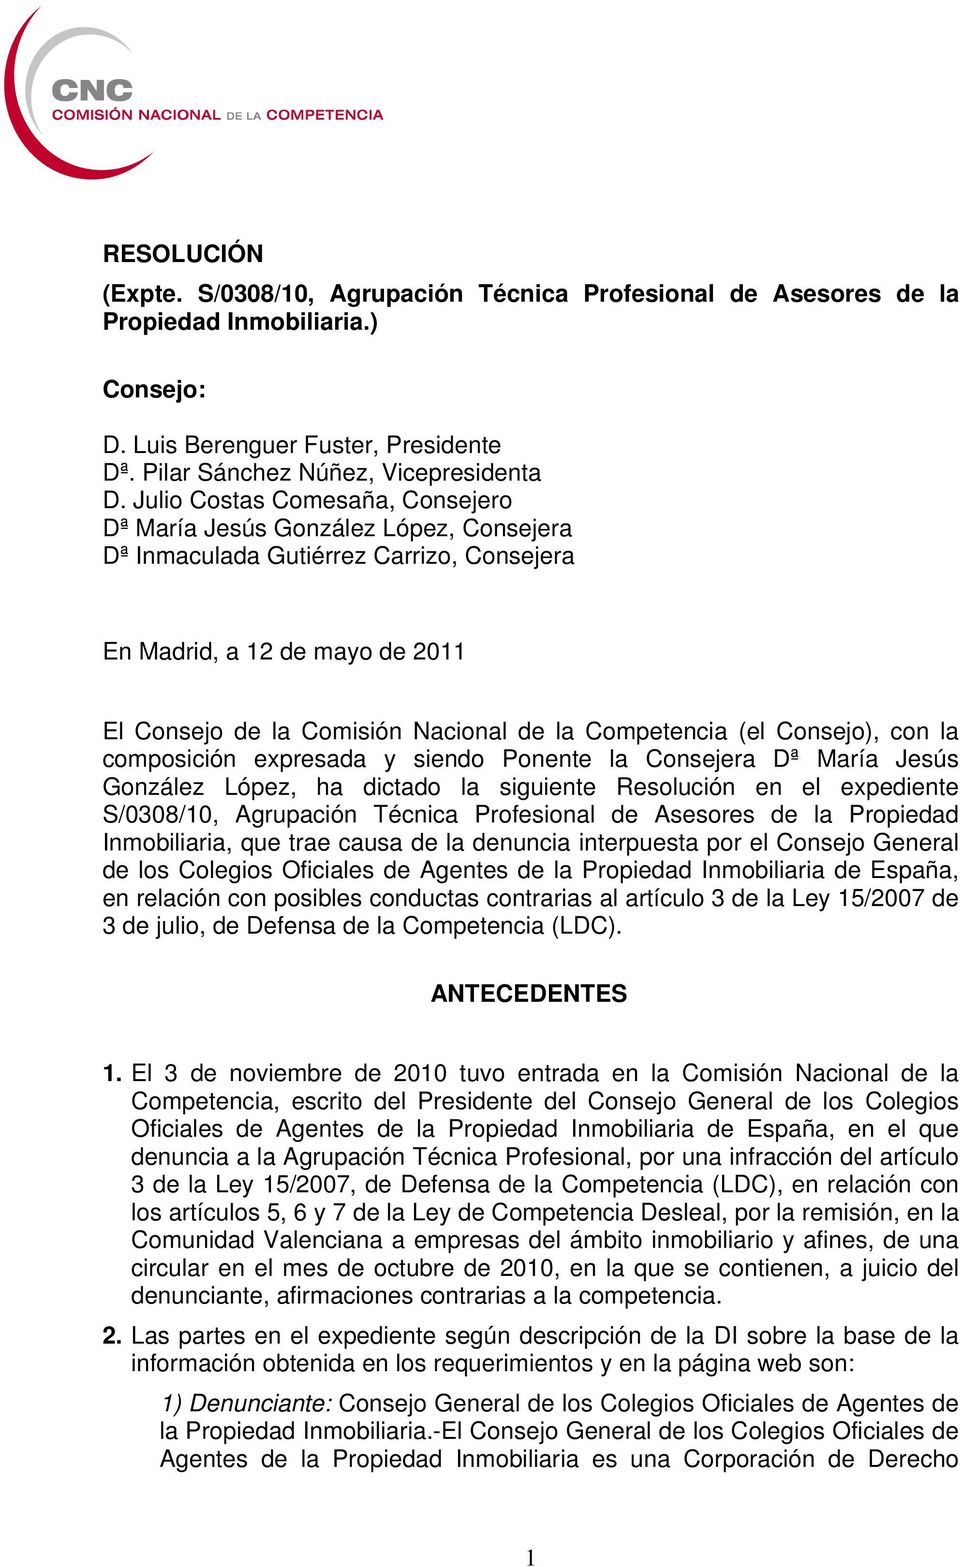 Competencia (el Consejo), con la composición expresada y siendo Ponente la Consejera Dª María Jesús González López, ha dictado la siguiente Resolución en el expediente S/0308/10, Agrupación Técnica